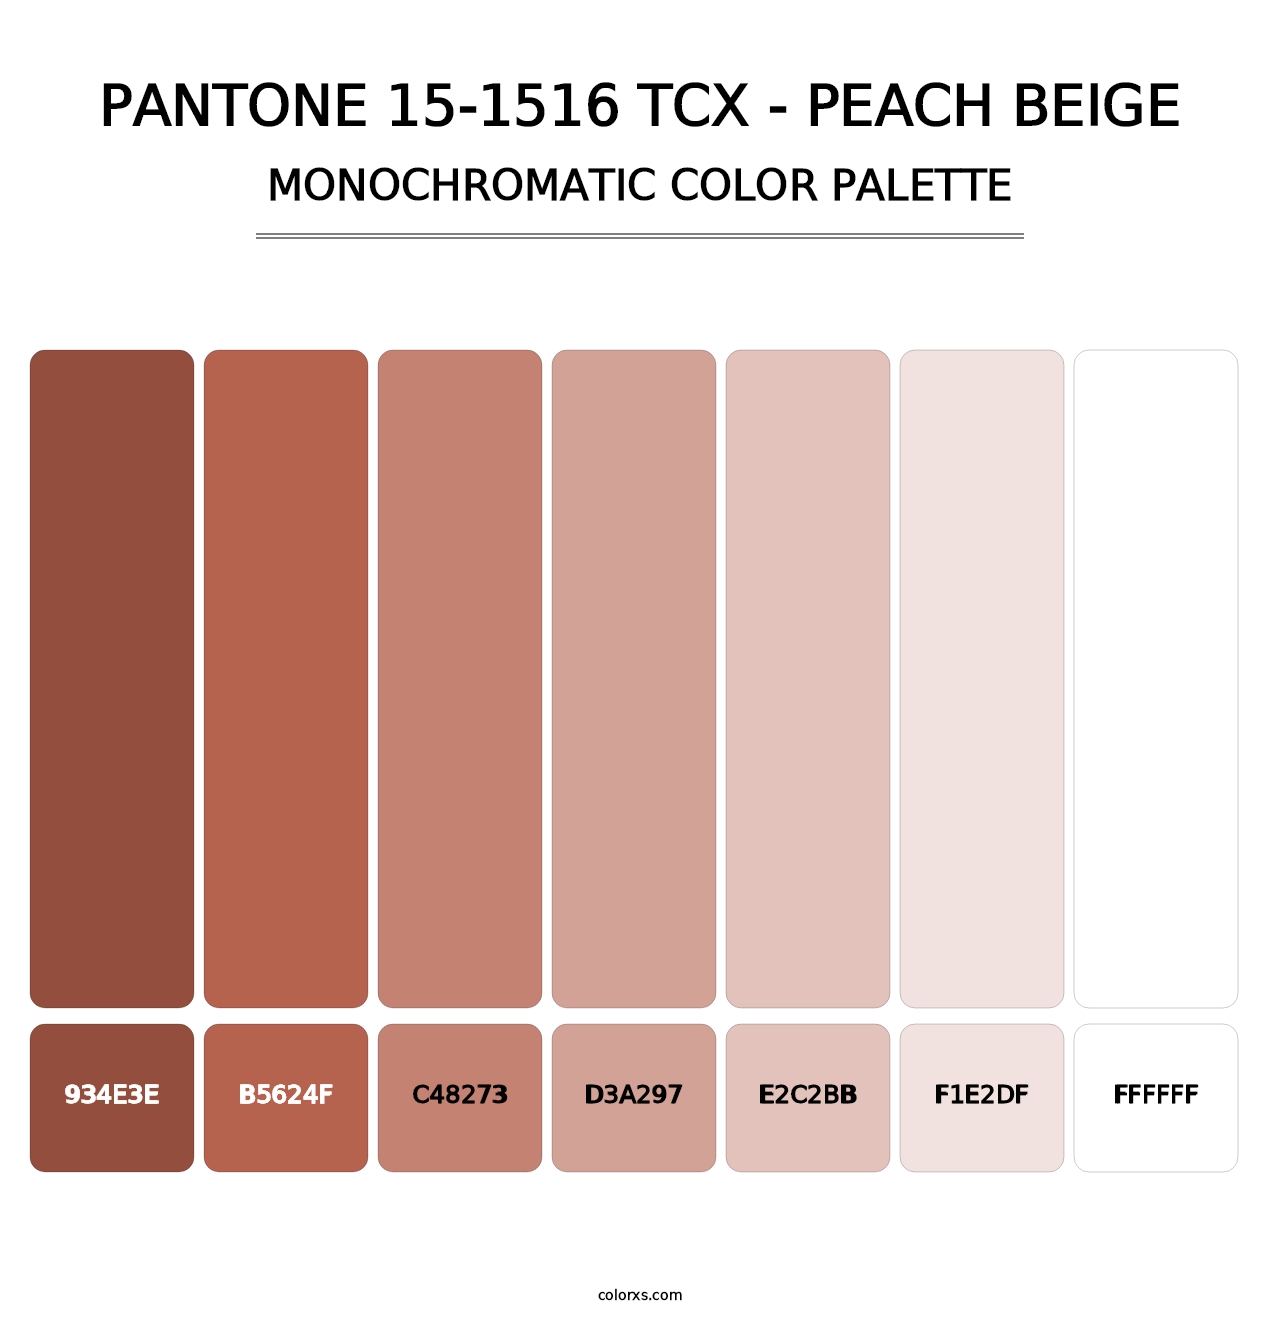 PANTONE 15-1516 TCX - Peach Beige - Monochromatic Color Palette